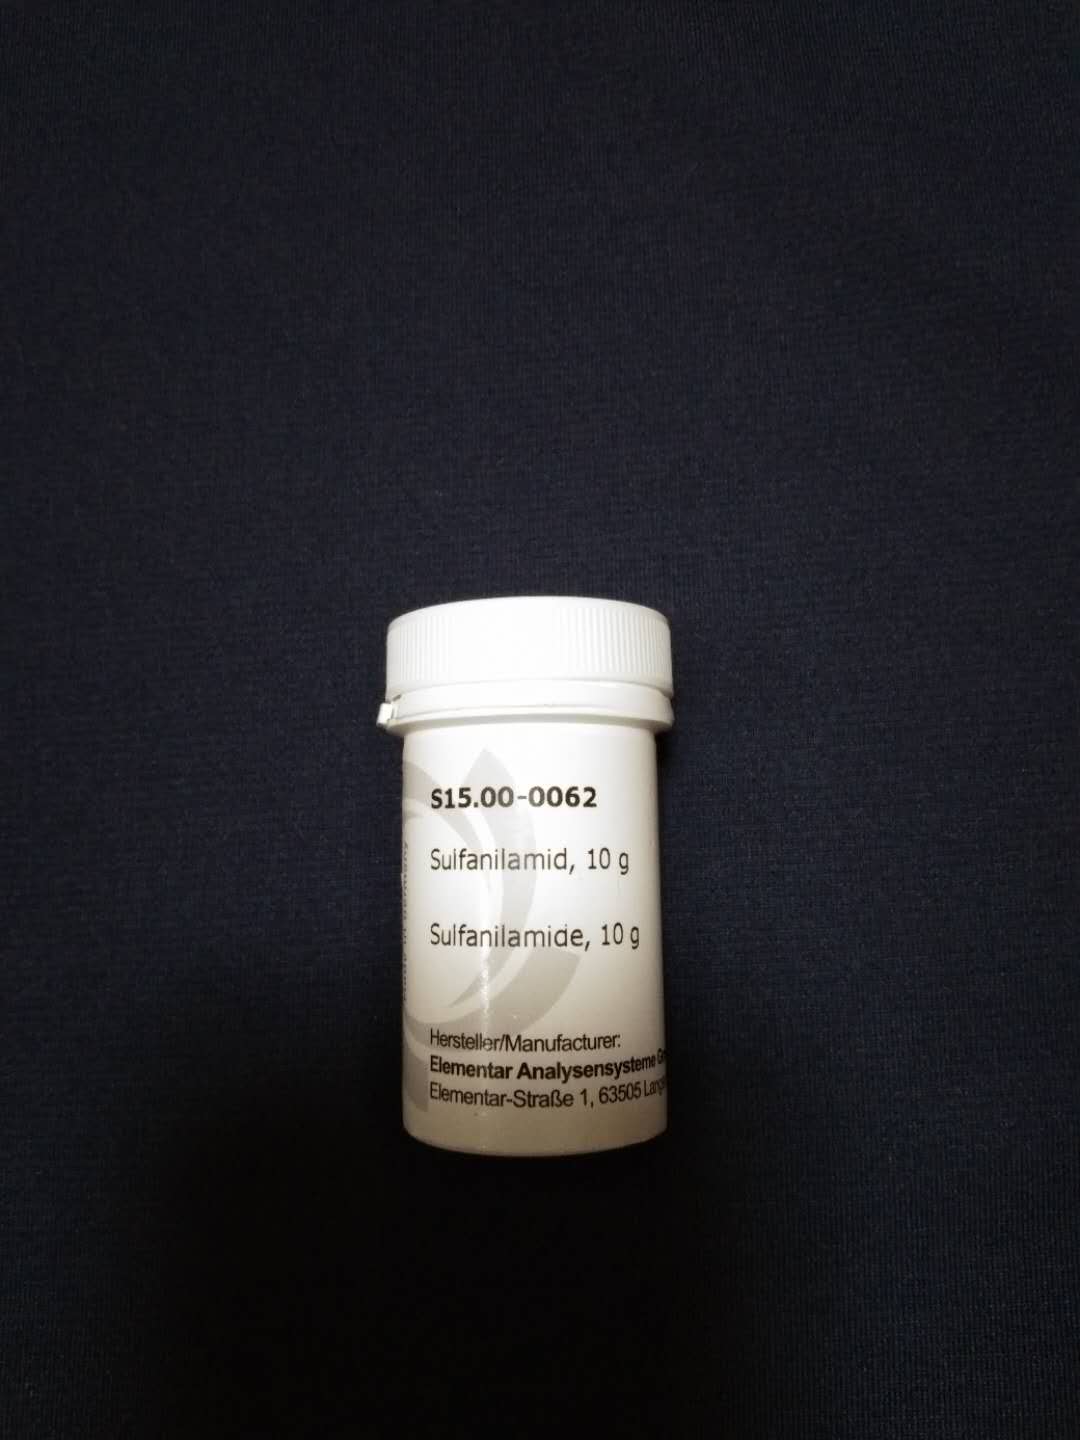 磺胺,15.00-0062,德国元素elementar